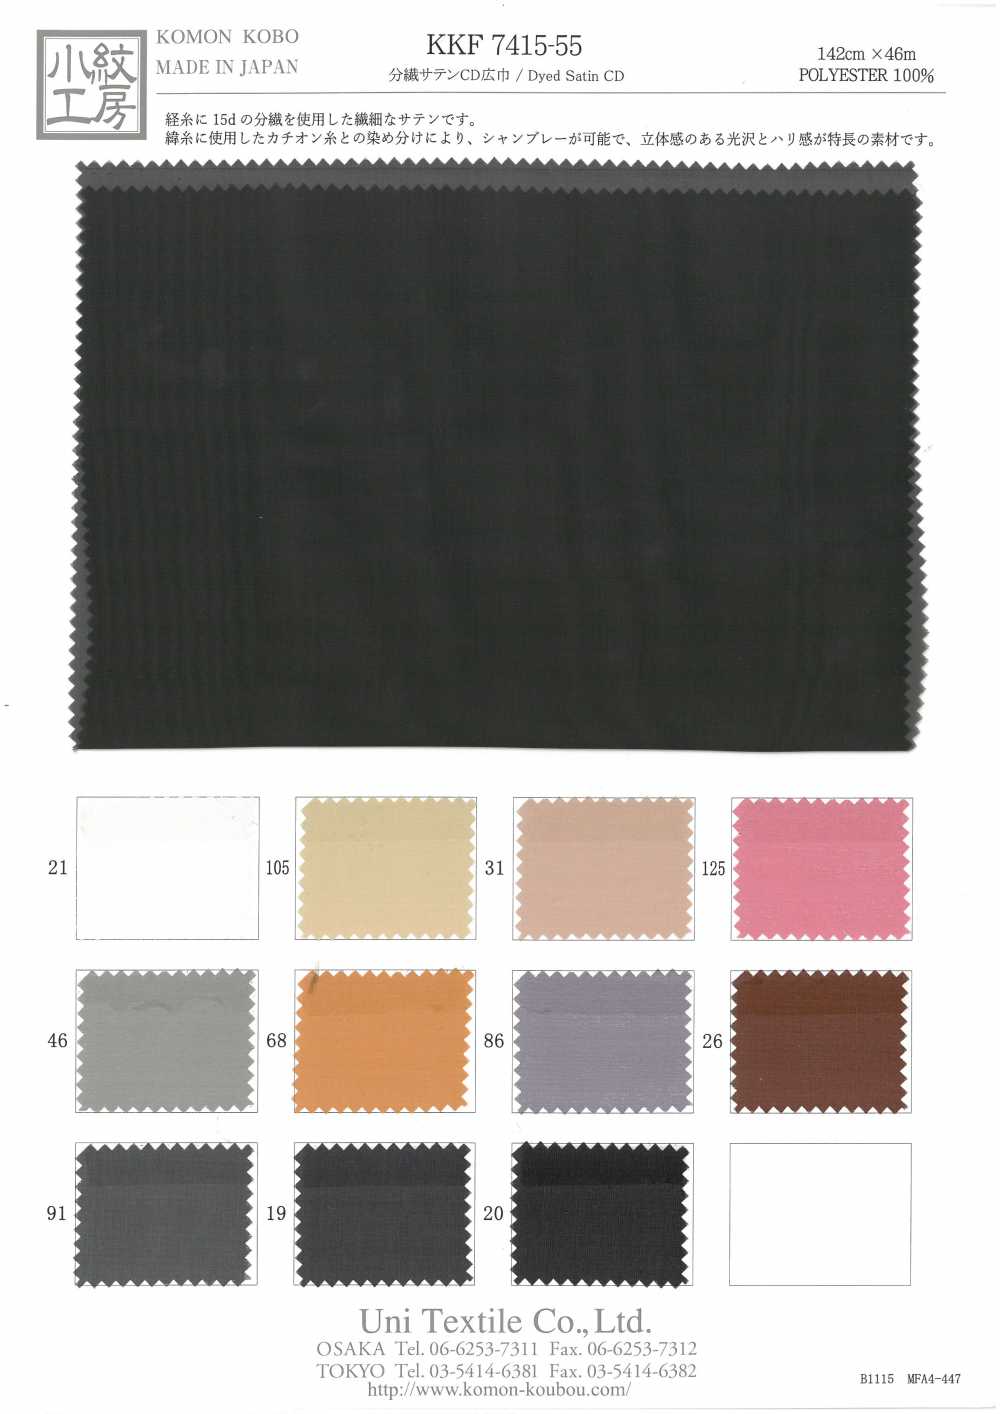 KKF7415-55 Ancho Ancho De CD Satinado De Fibra Dividida[Fabrica Textil] Uni Textile